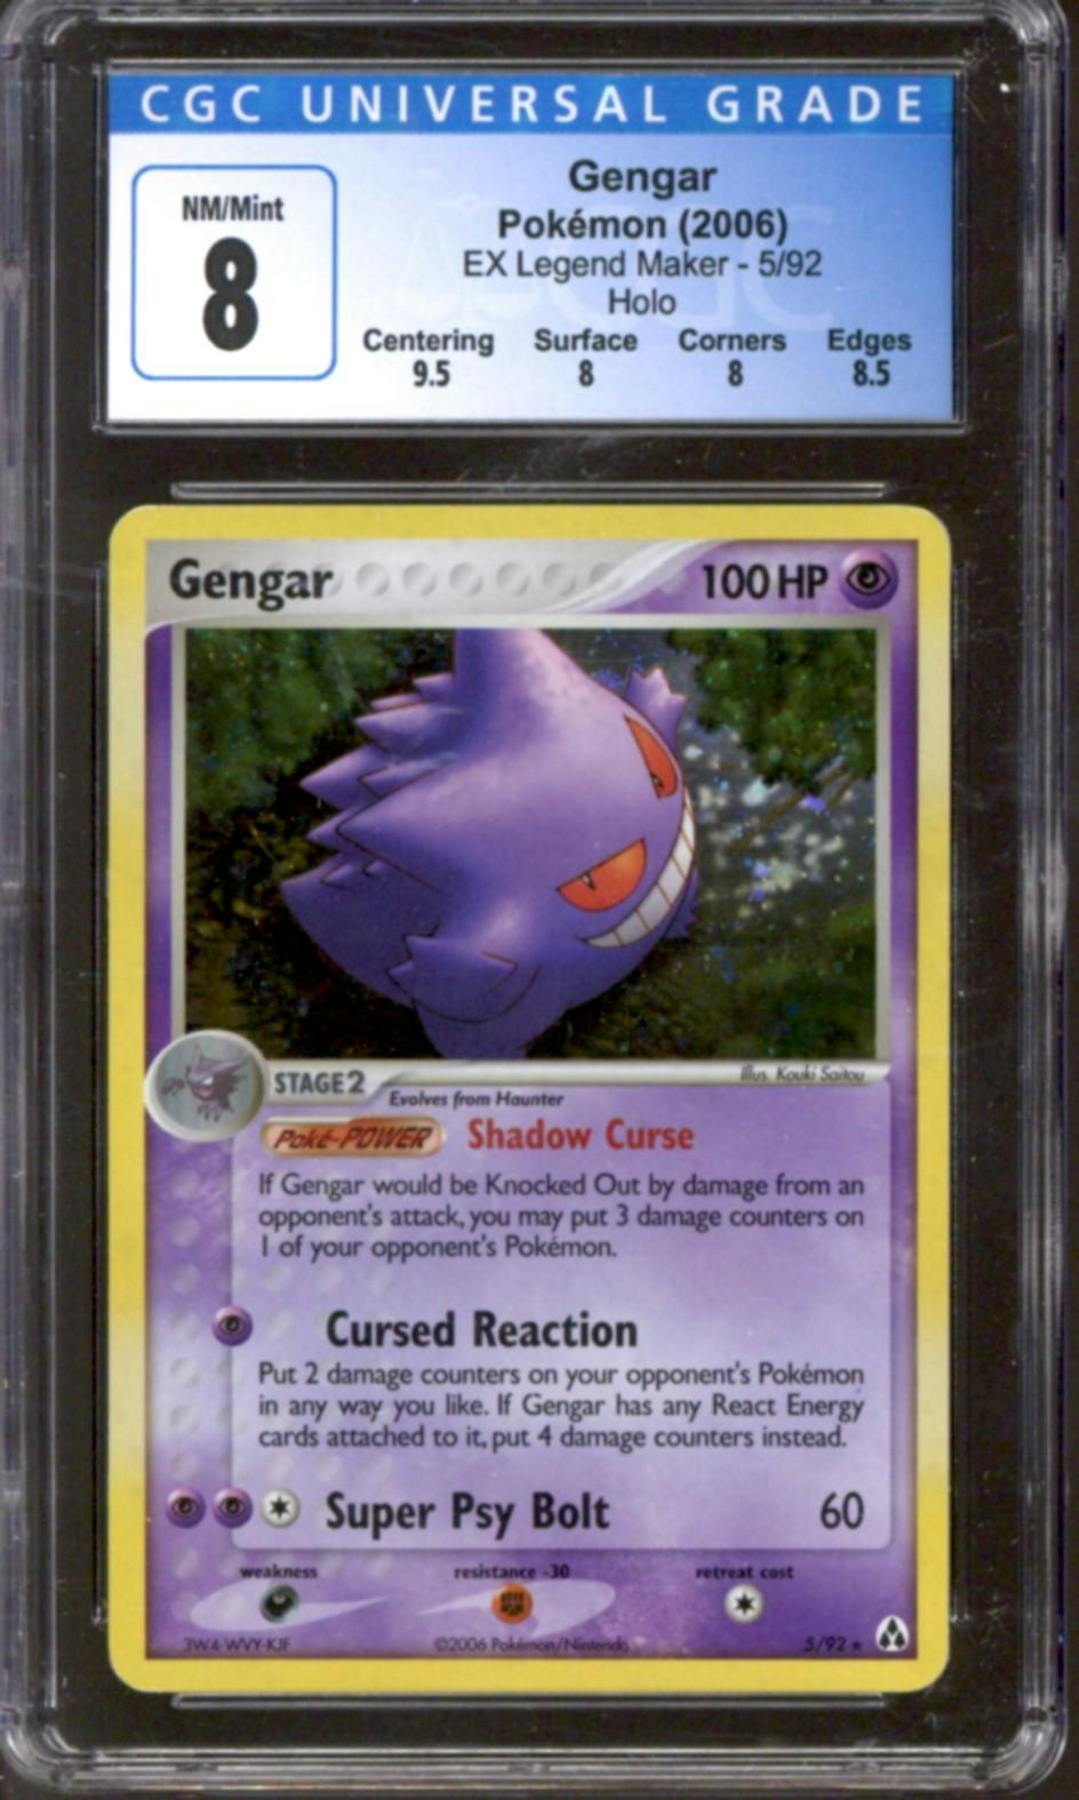 Gengar (5/92) [EX: Legend Maker]